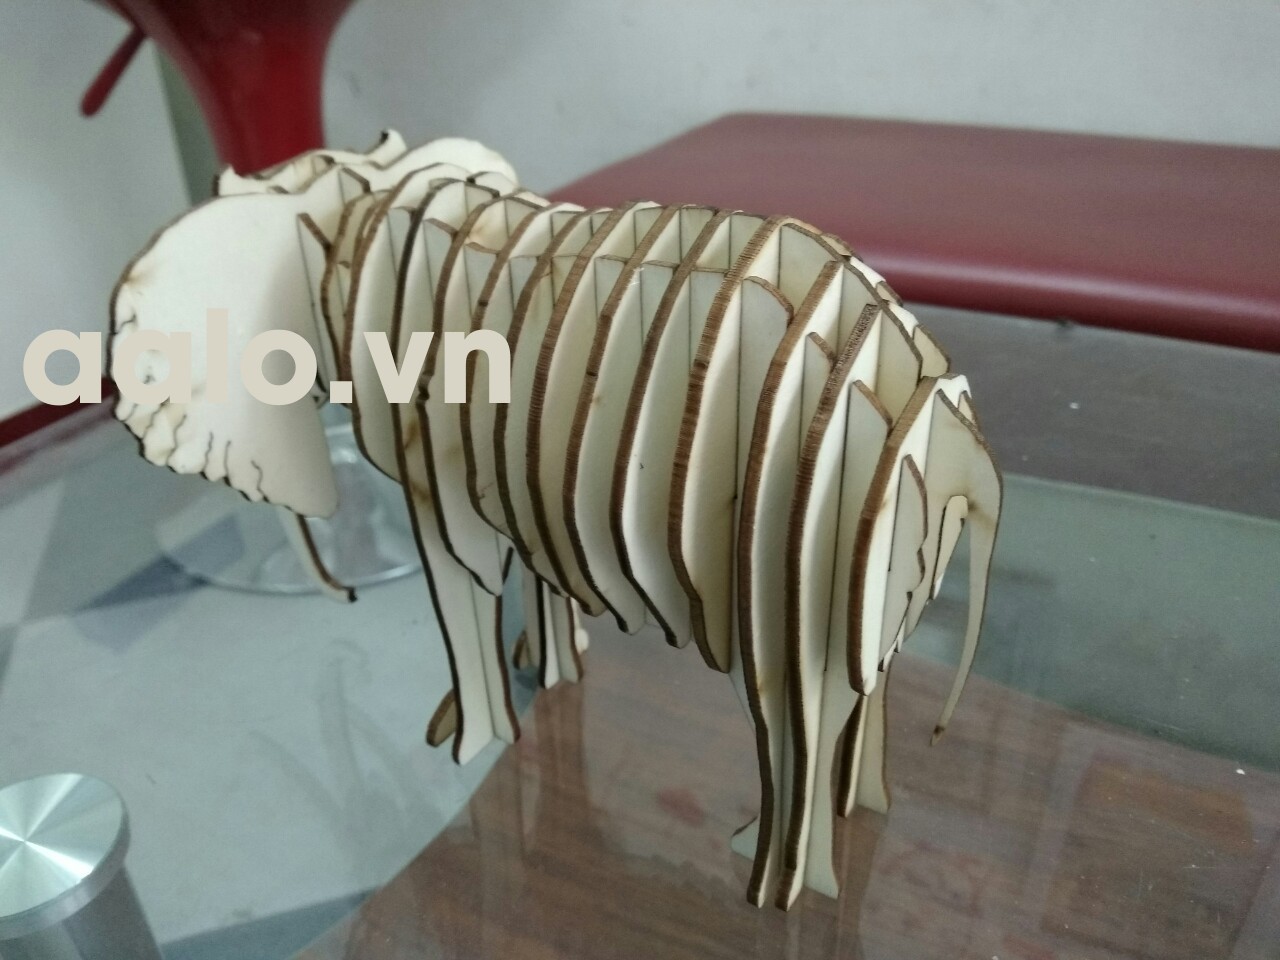 Quà lưu niệm  lắp ráp gỗ 3D mô hình chú voi 